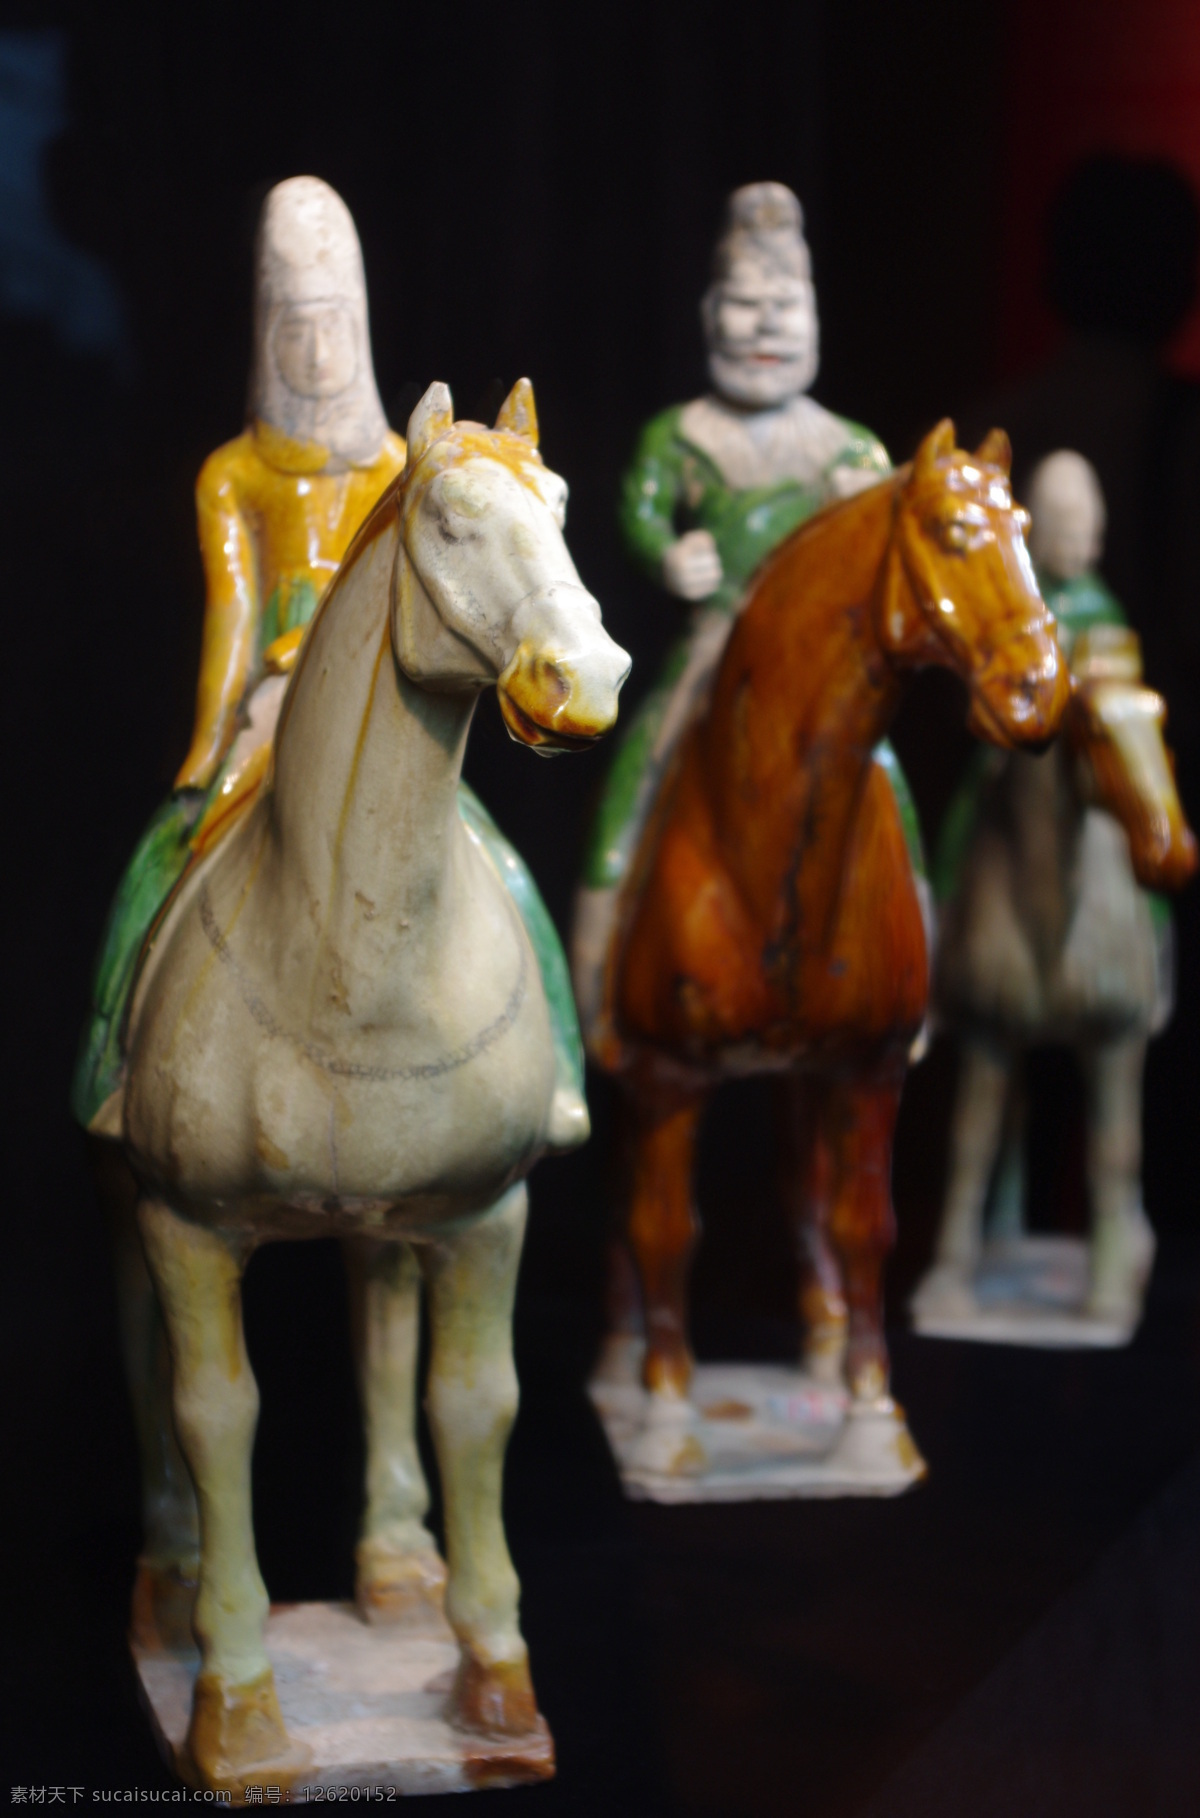 陶塑 唐三彩 陶艺 雕塑 瓷器雕塑 泥塑 骆驼陶塑 彩色陶塑 雕塑艺术 雕塑设计 艺术品 艺术作品 造型艺术 传统文化 文化艺术